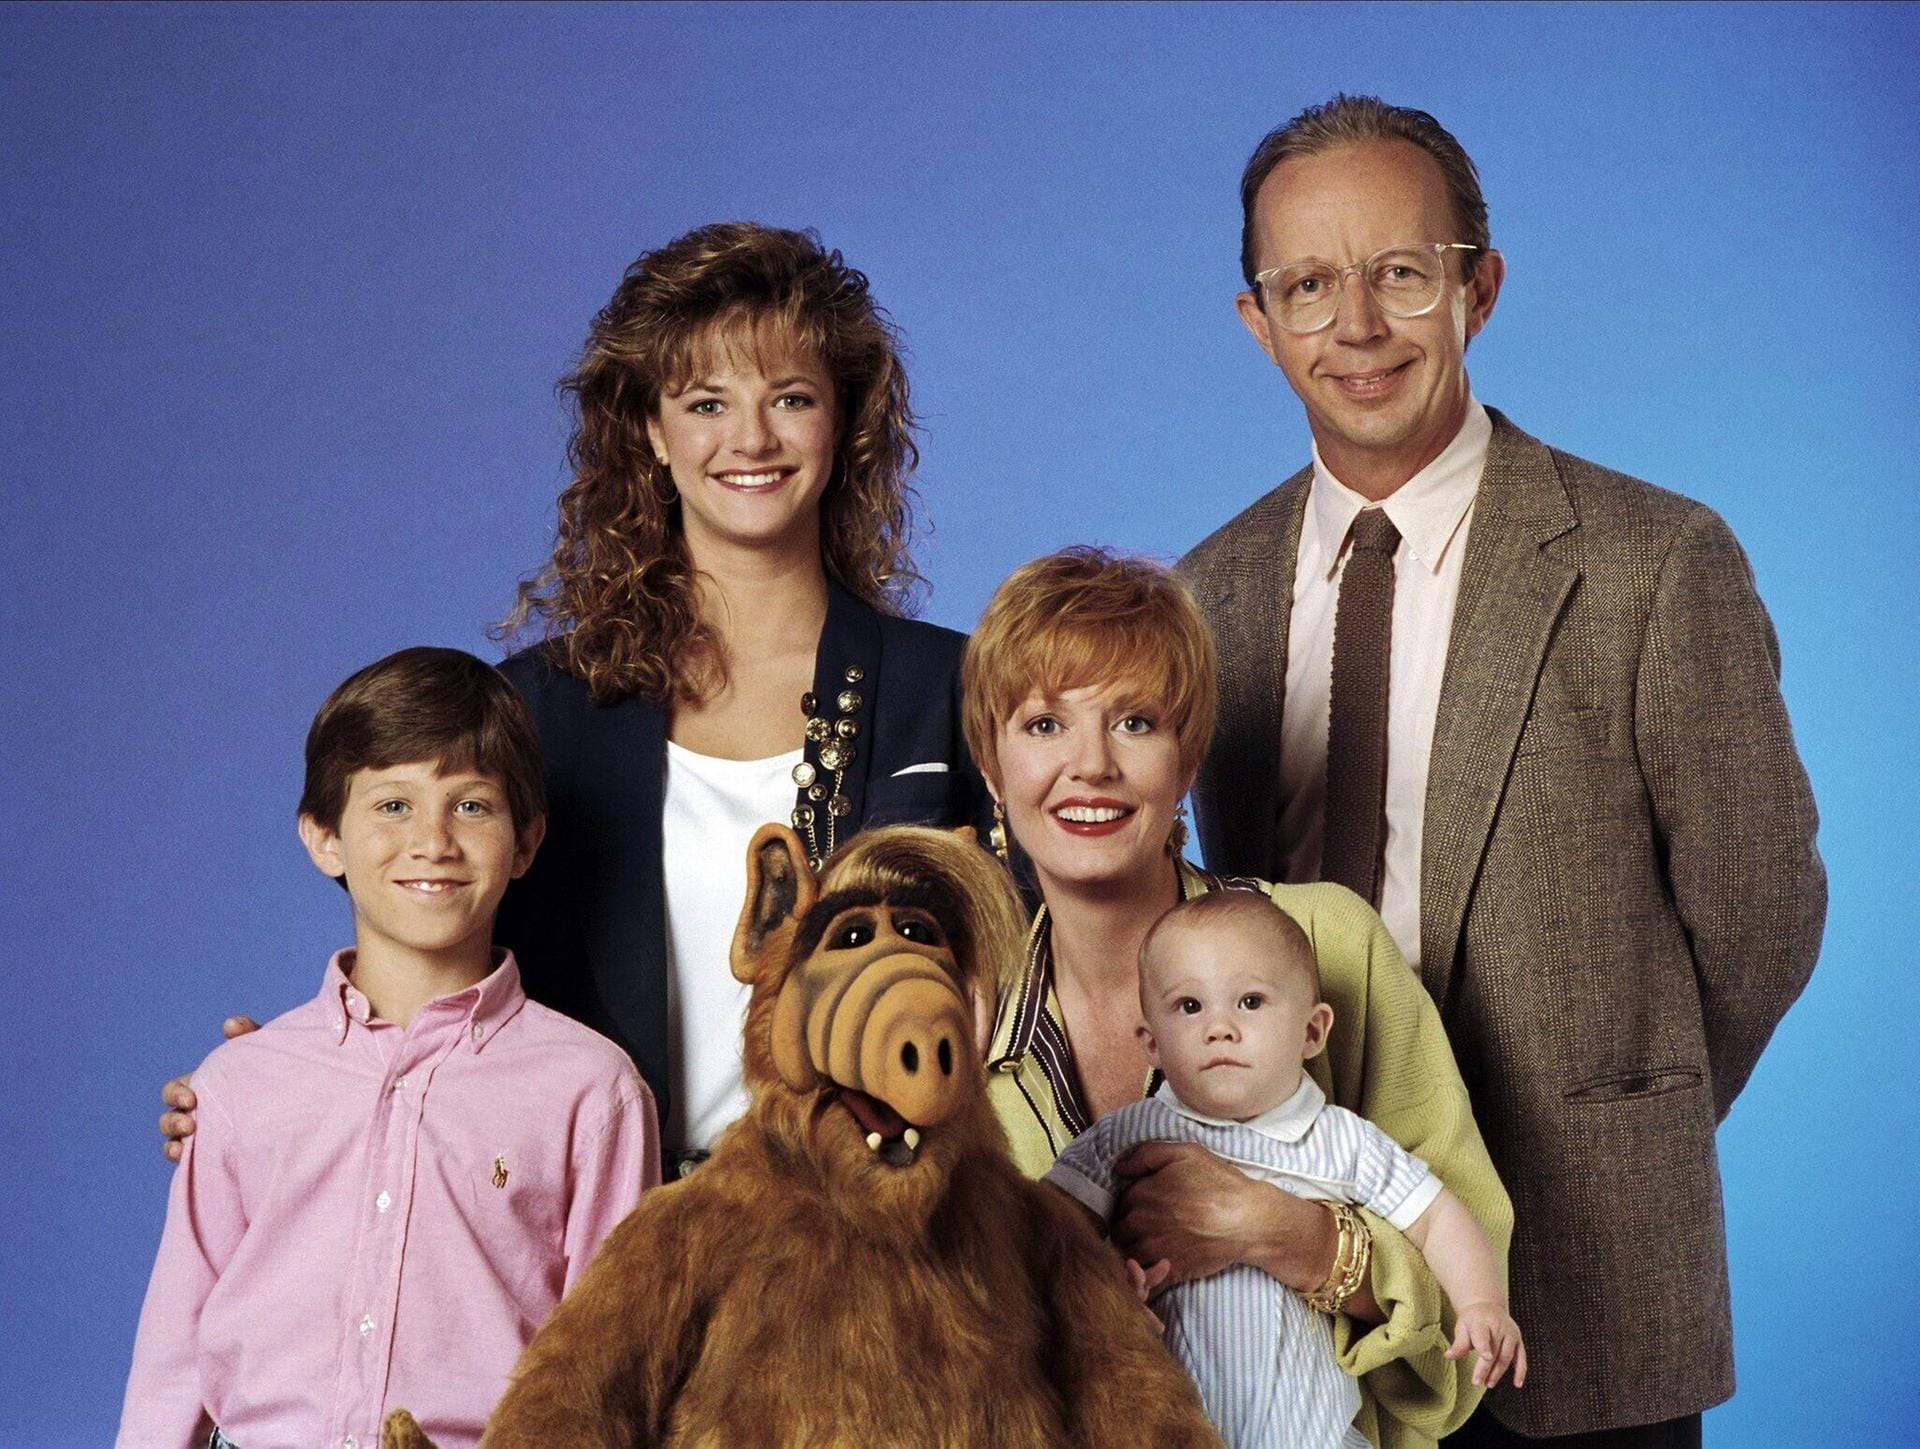 Familie Tanner und ihr Alf: Die erfolgreiche 80-Jahre Sitkom aus den USA lief von 1986 bis 1990. In 102 Teilen zauberten die Schauspieler und natürlich Alf den Zuschauern ein Lachen ins Gesicht. ALF steht für "Außerirdische Lebensform".